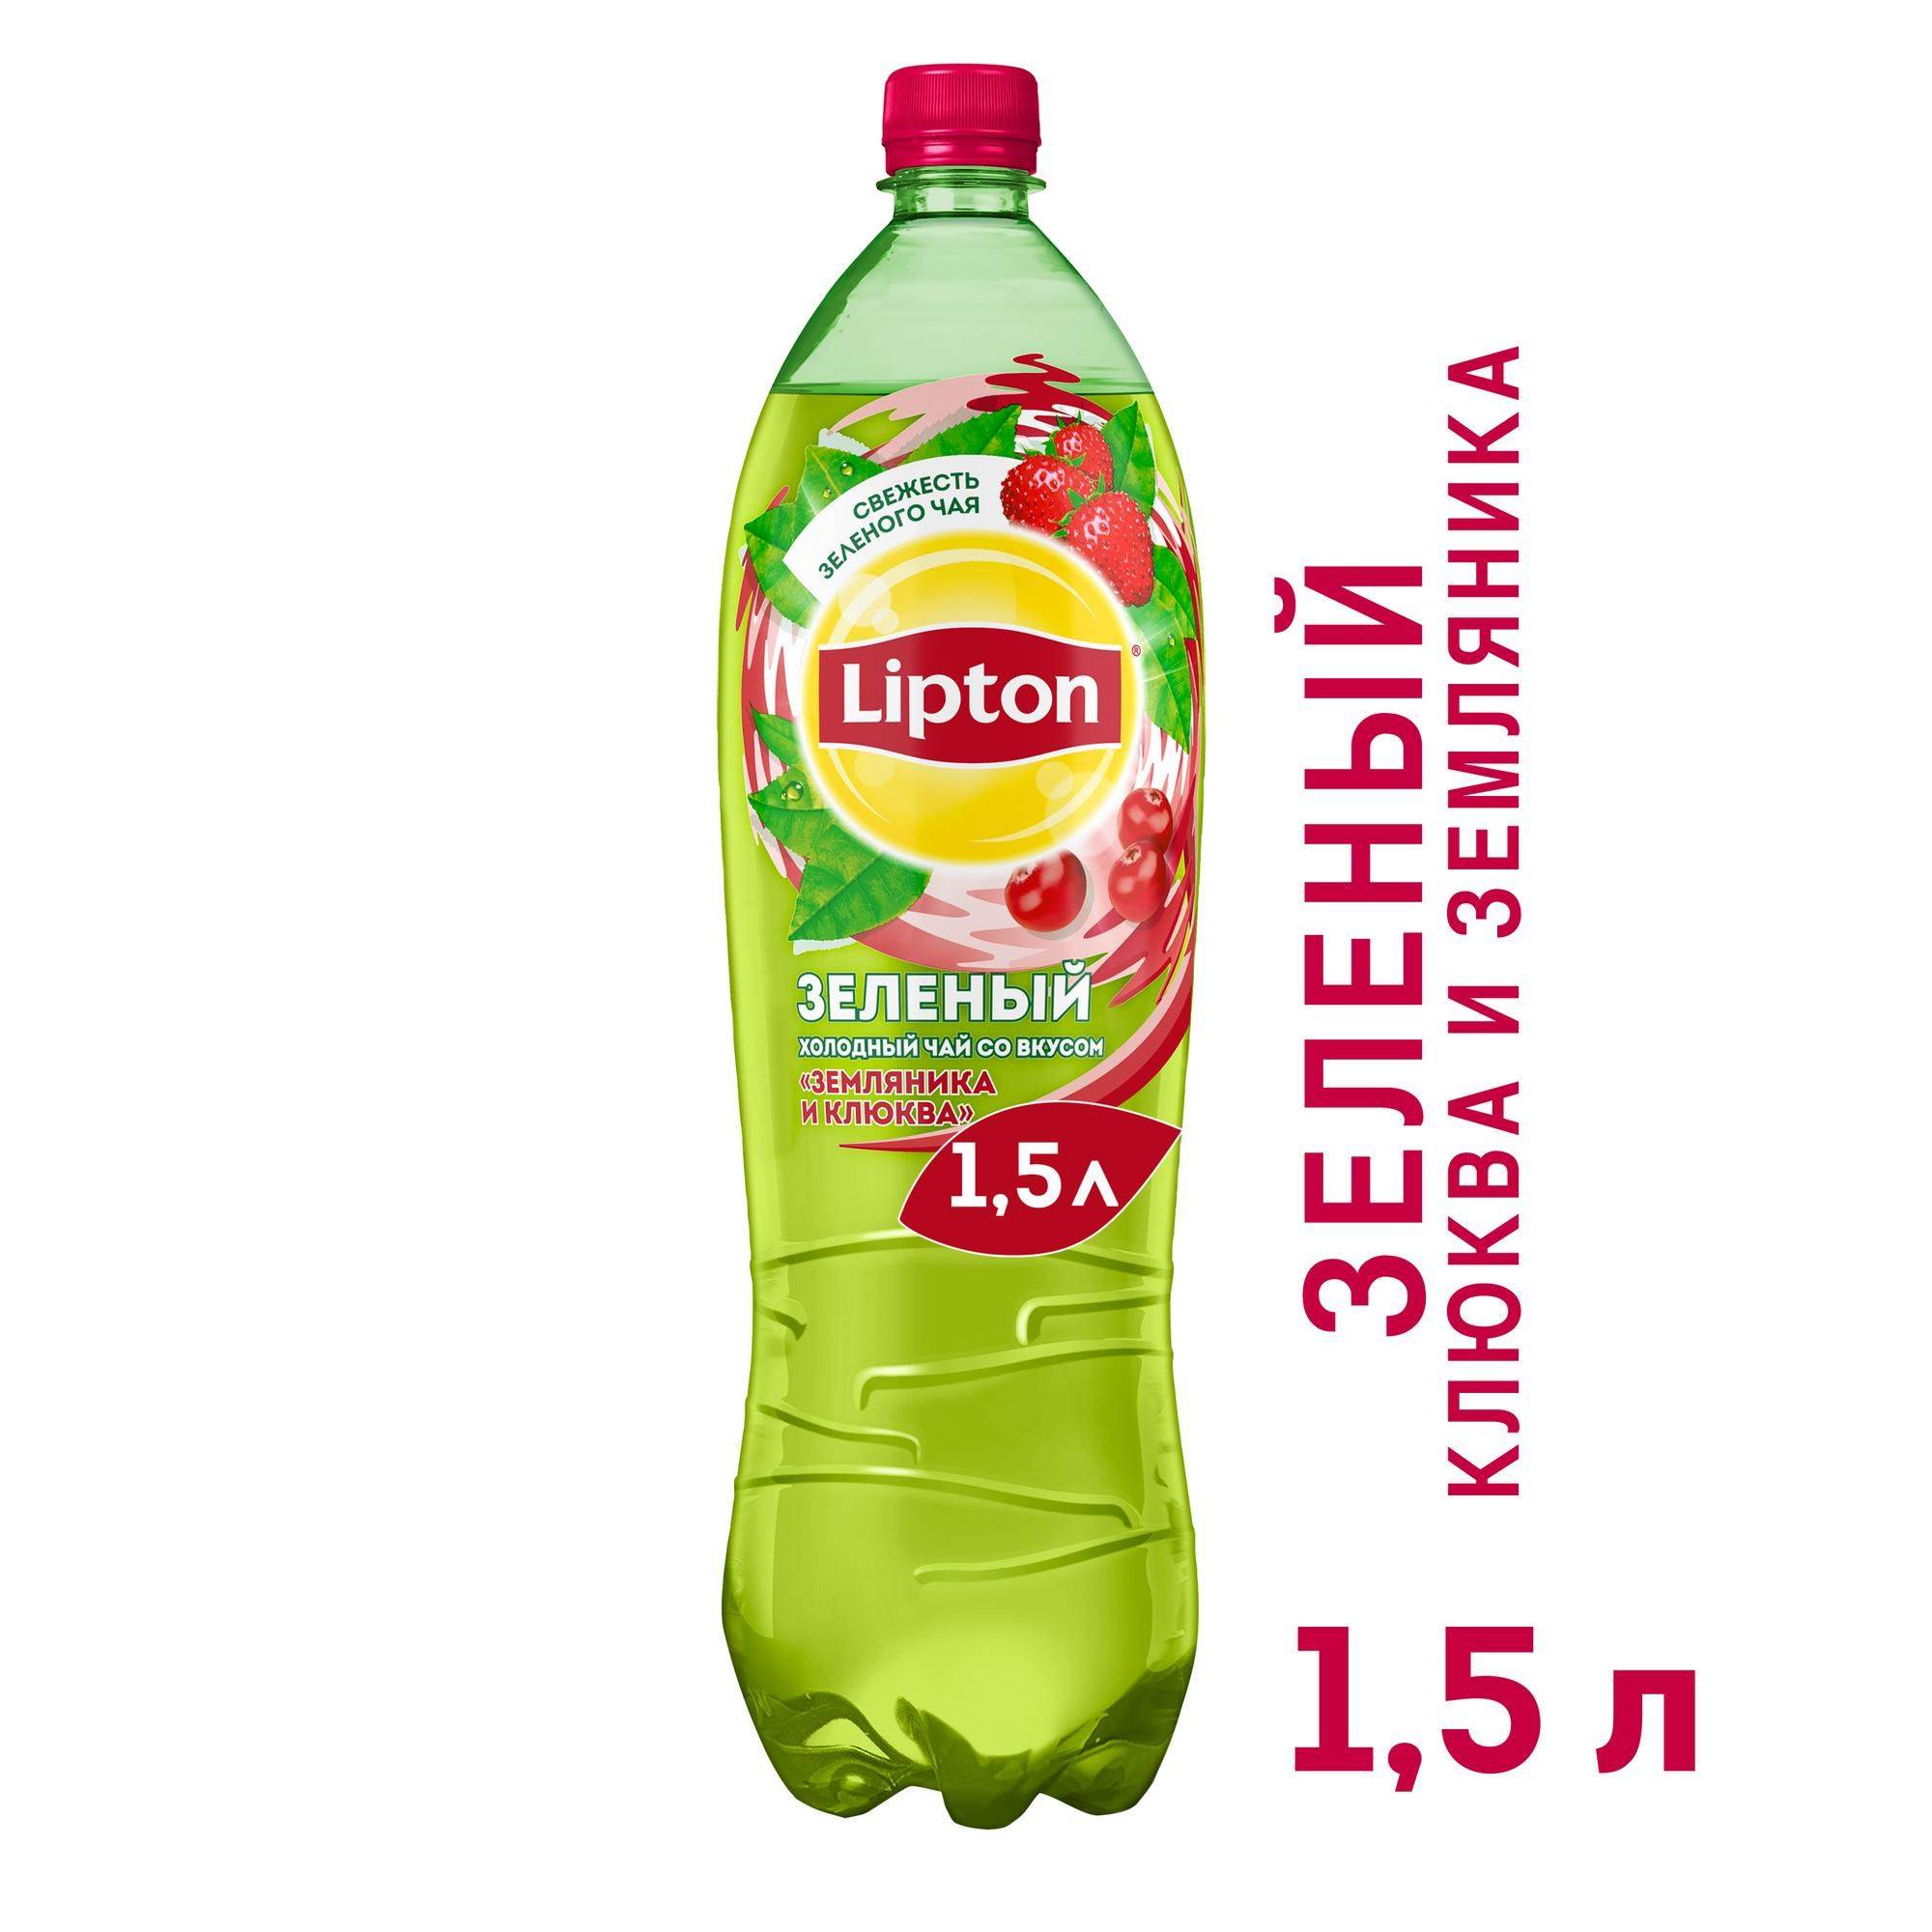 Зеленый чай липтон (lipton): виды, калорийность